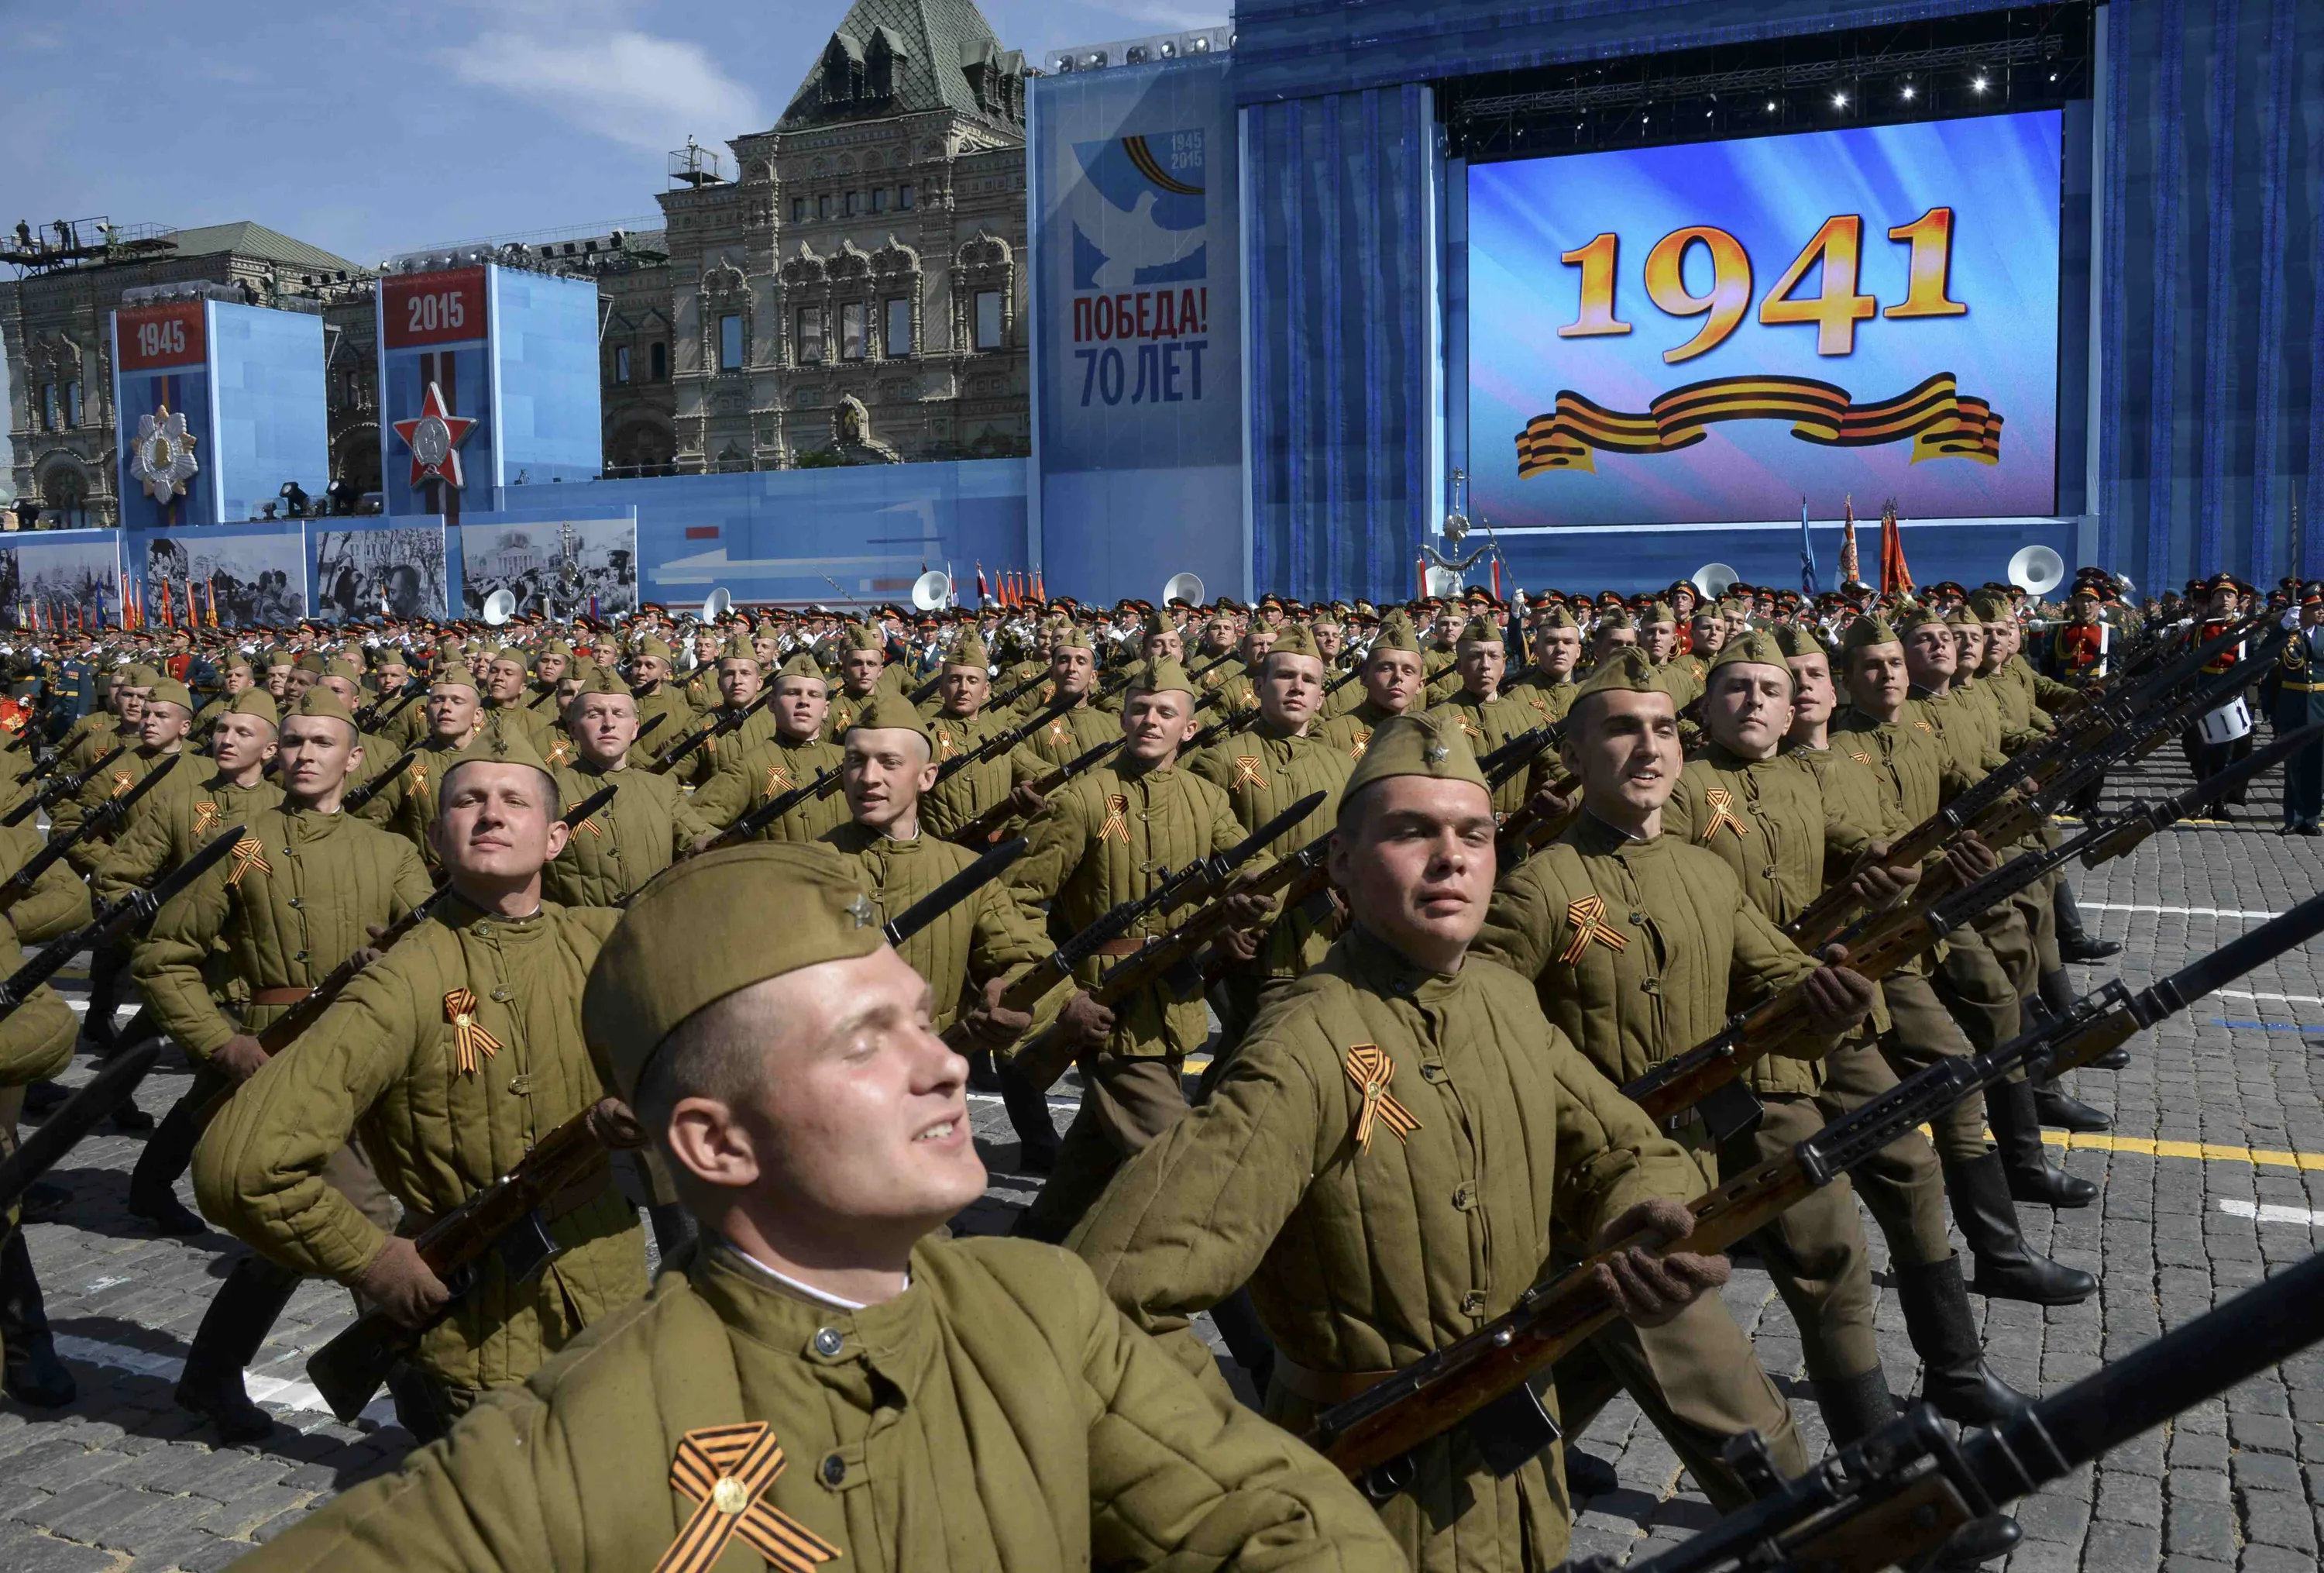 9 мая 2015 год. Солдаты на параде. Российский солдат на параде. Парад 9 мая солдаты. Парад Победы 2015.